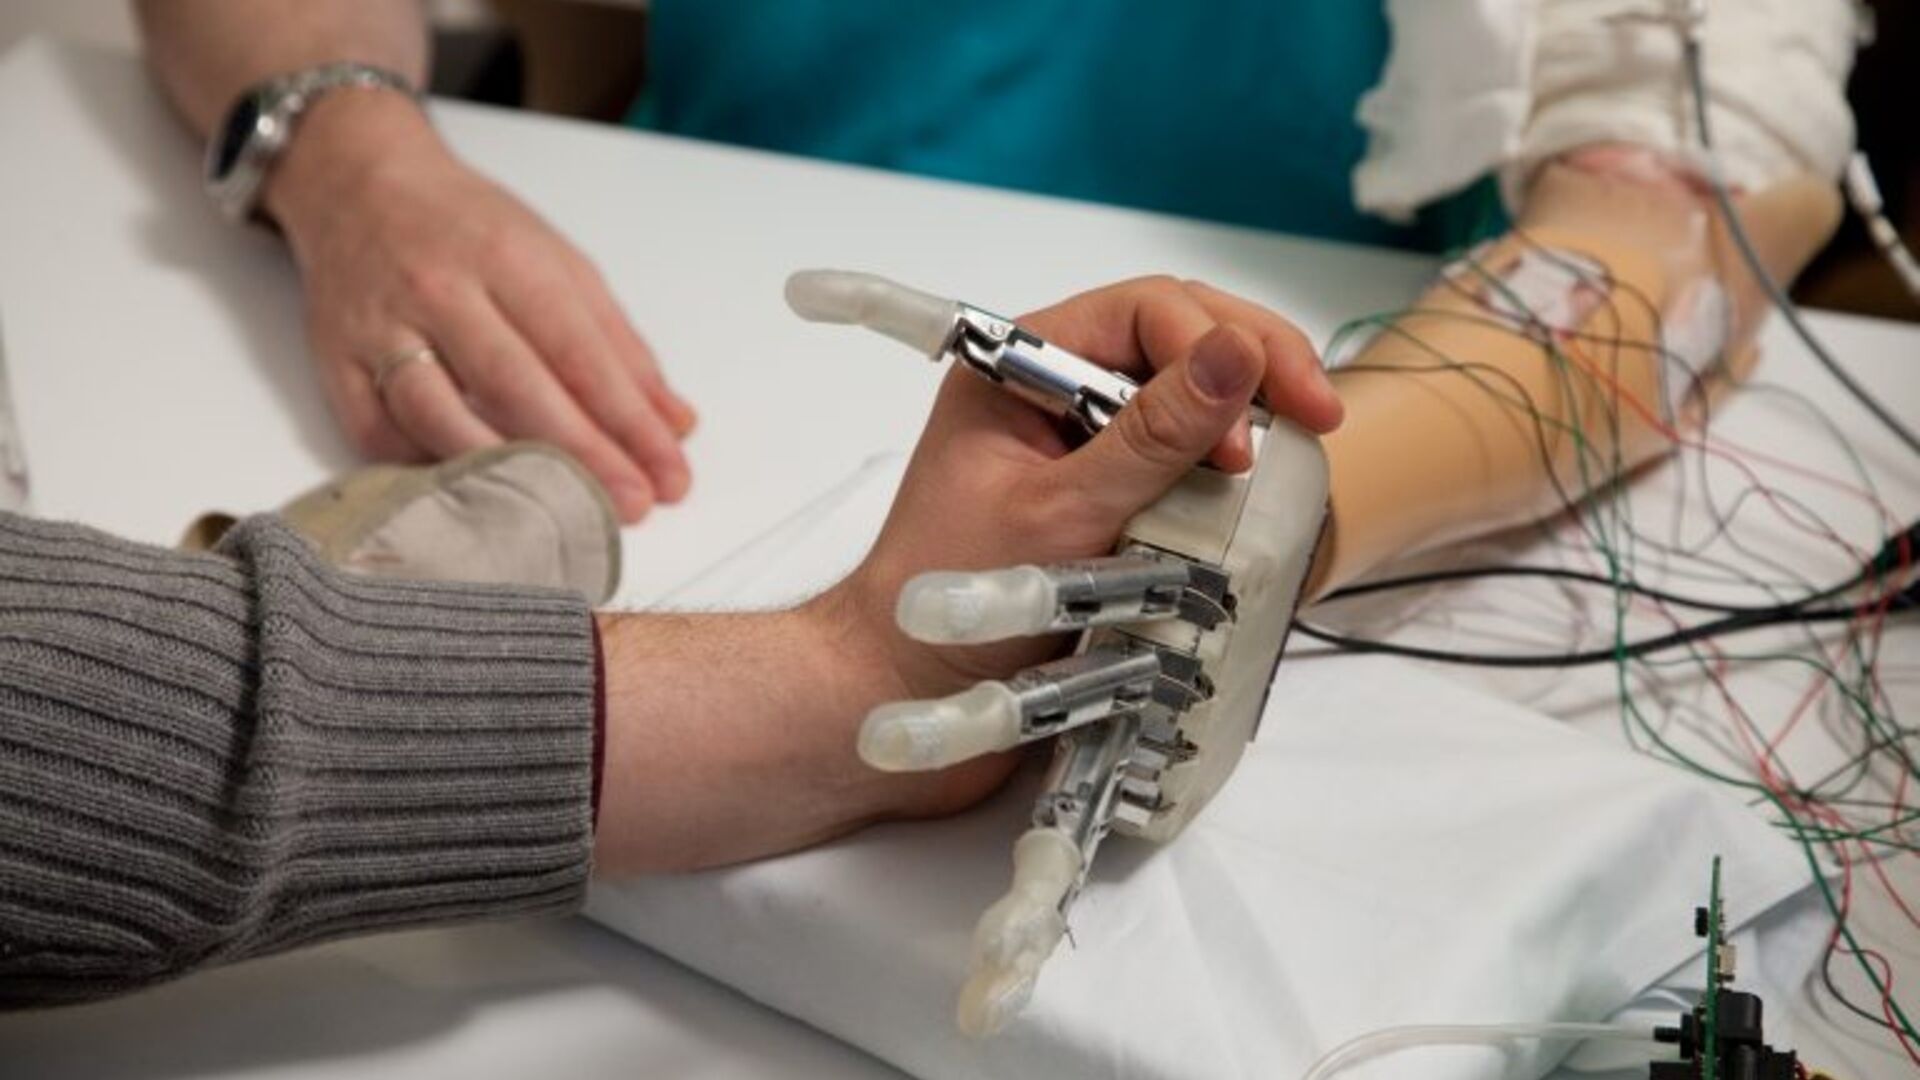 Robotica: protesi robotiche per migliorare qualità della vita